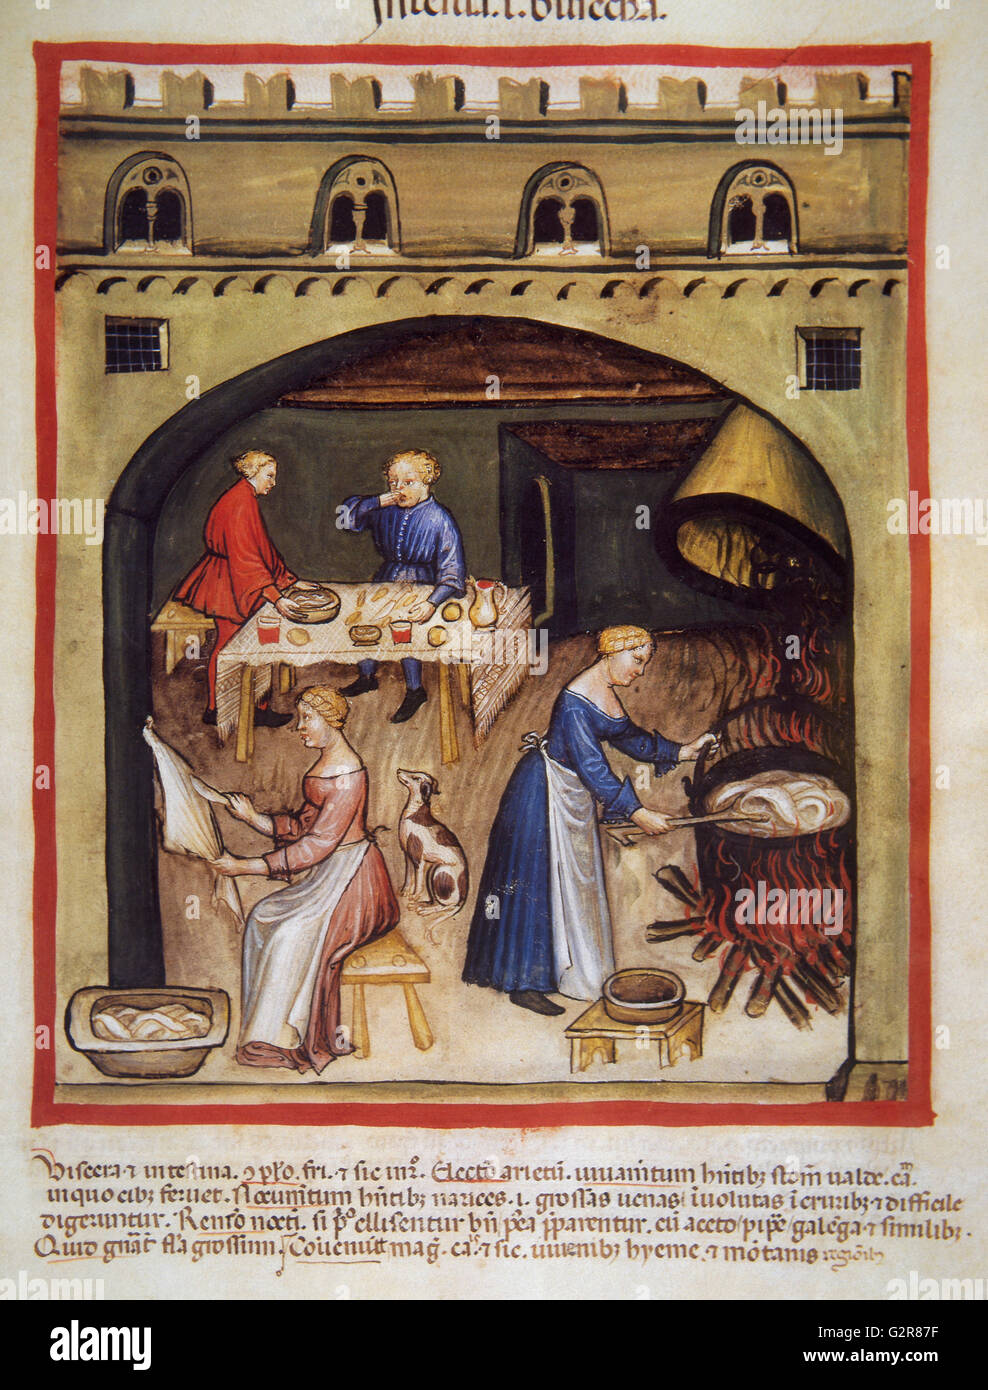 Tavolo medievale immagini e fotografie stock ad alta risoluzione - Alamy